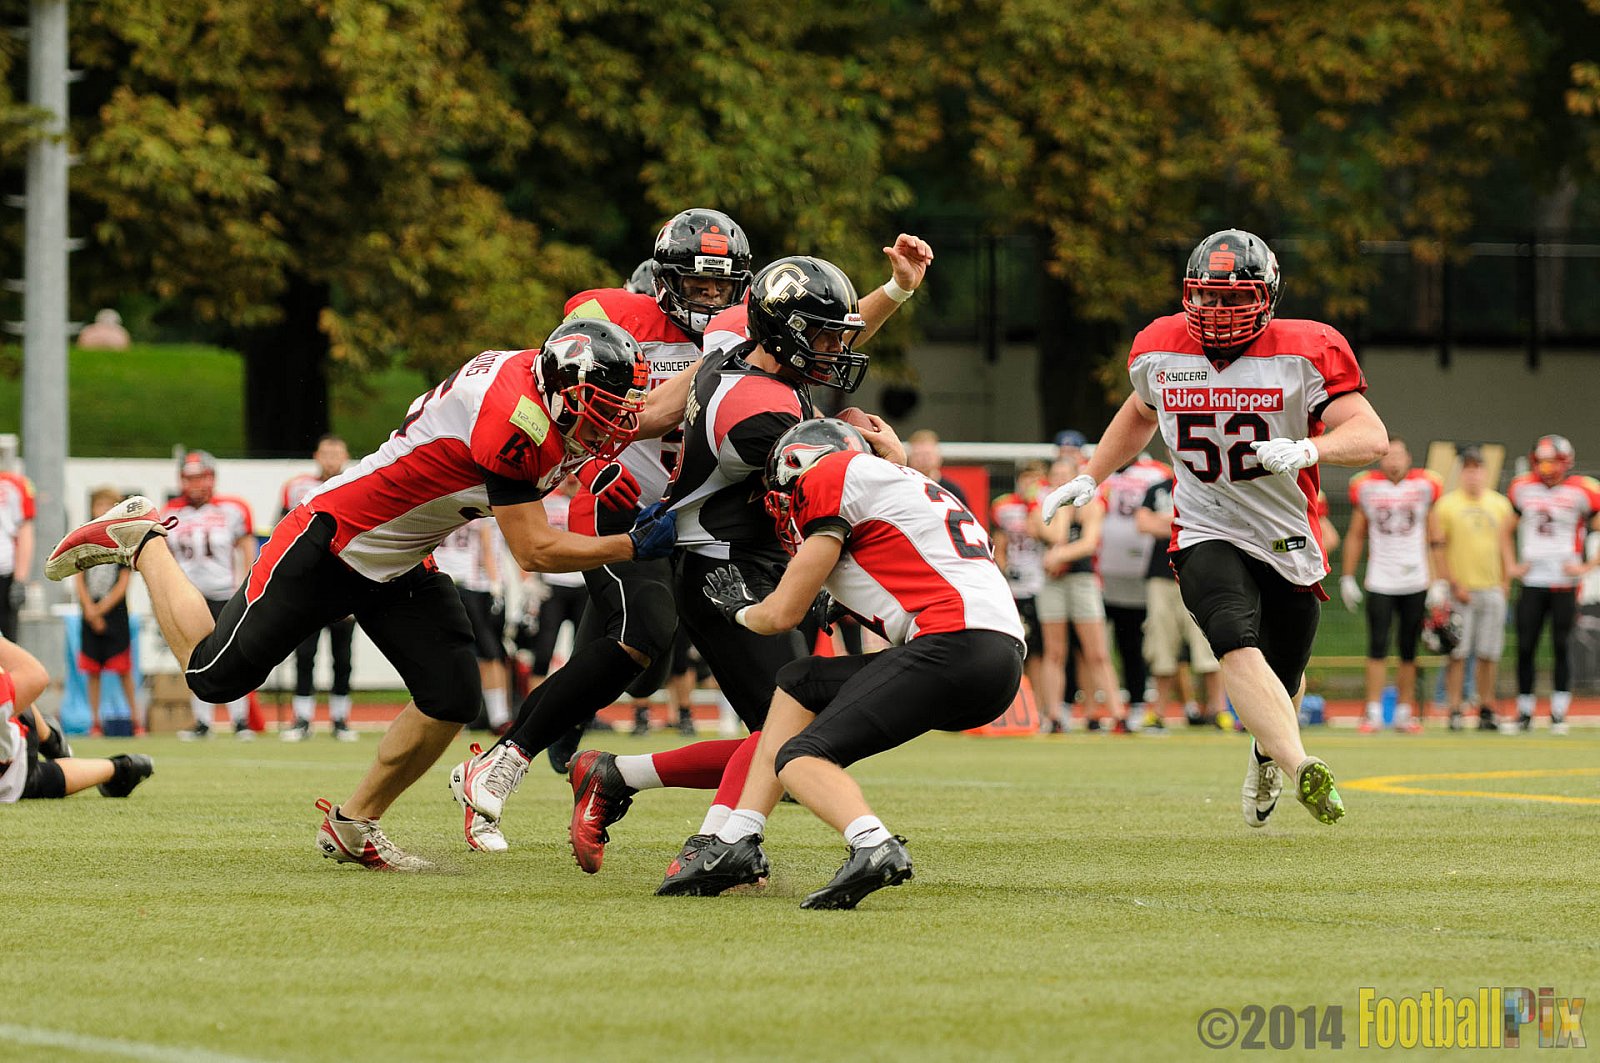 Cologne Falcons II vs. Solingen Paladins - 03.08.2014 Cologne Falcons II vs. Solingen Paladins (34:14) 